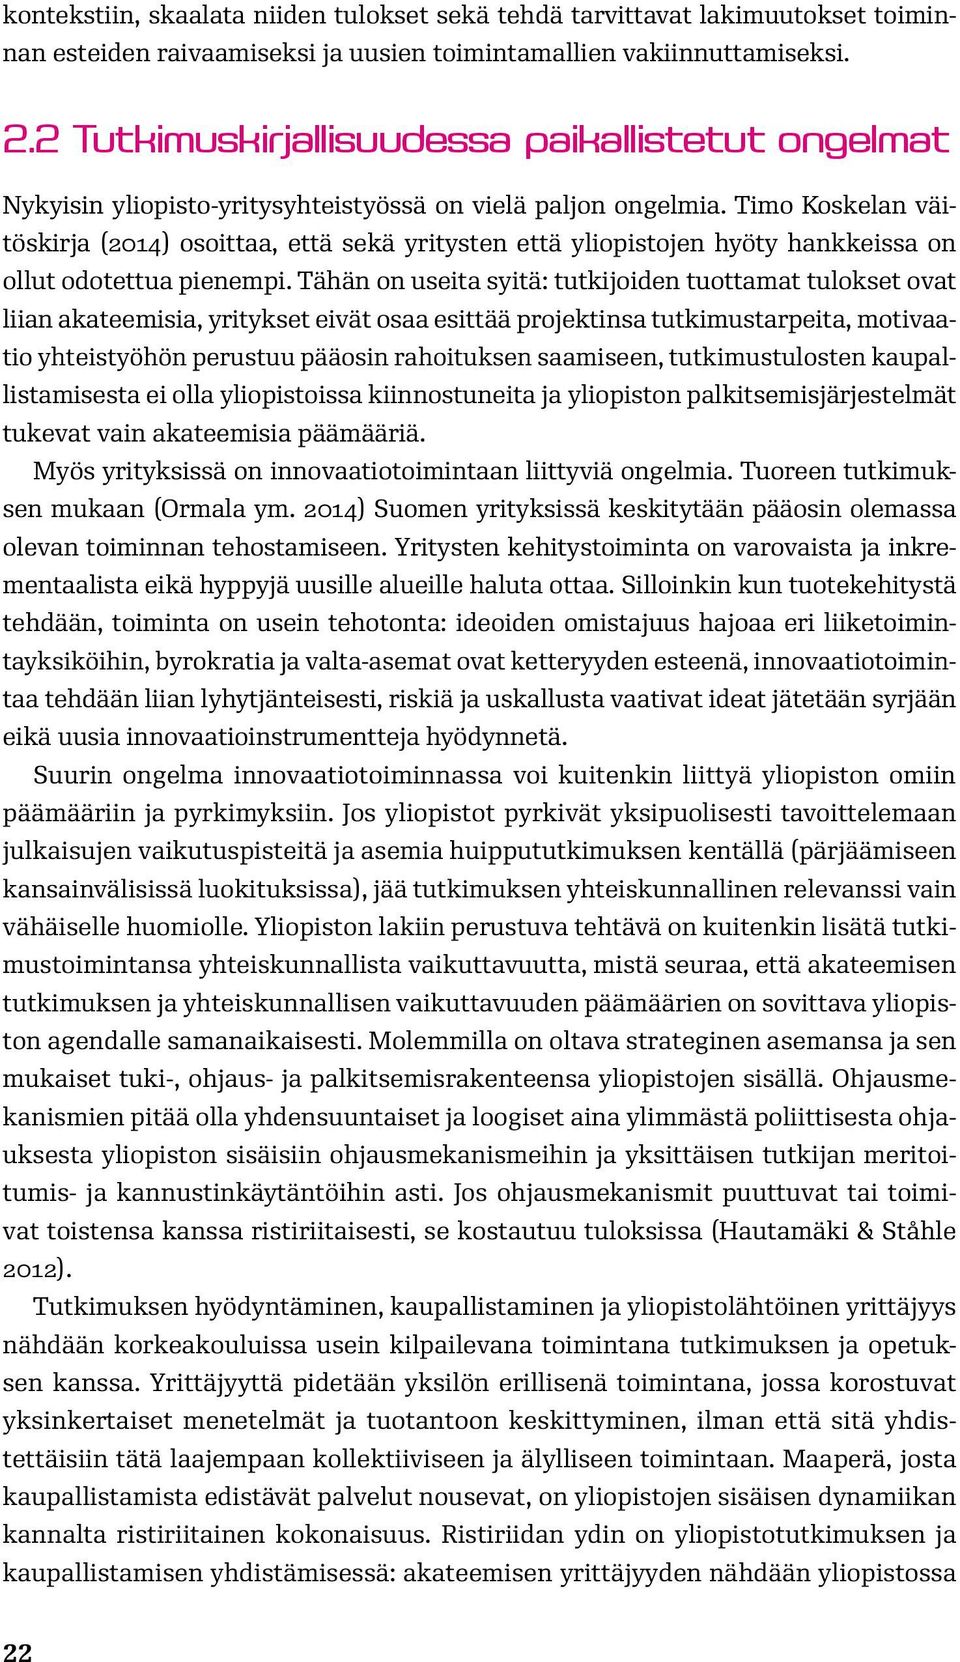 Timo Koskelan väitöskirja (2014) osoittaa, että sekä yritysten että yliopistojen hyöty hankkeissa on ollut odotettua pienempi.